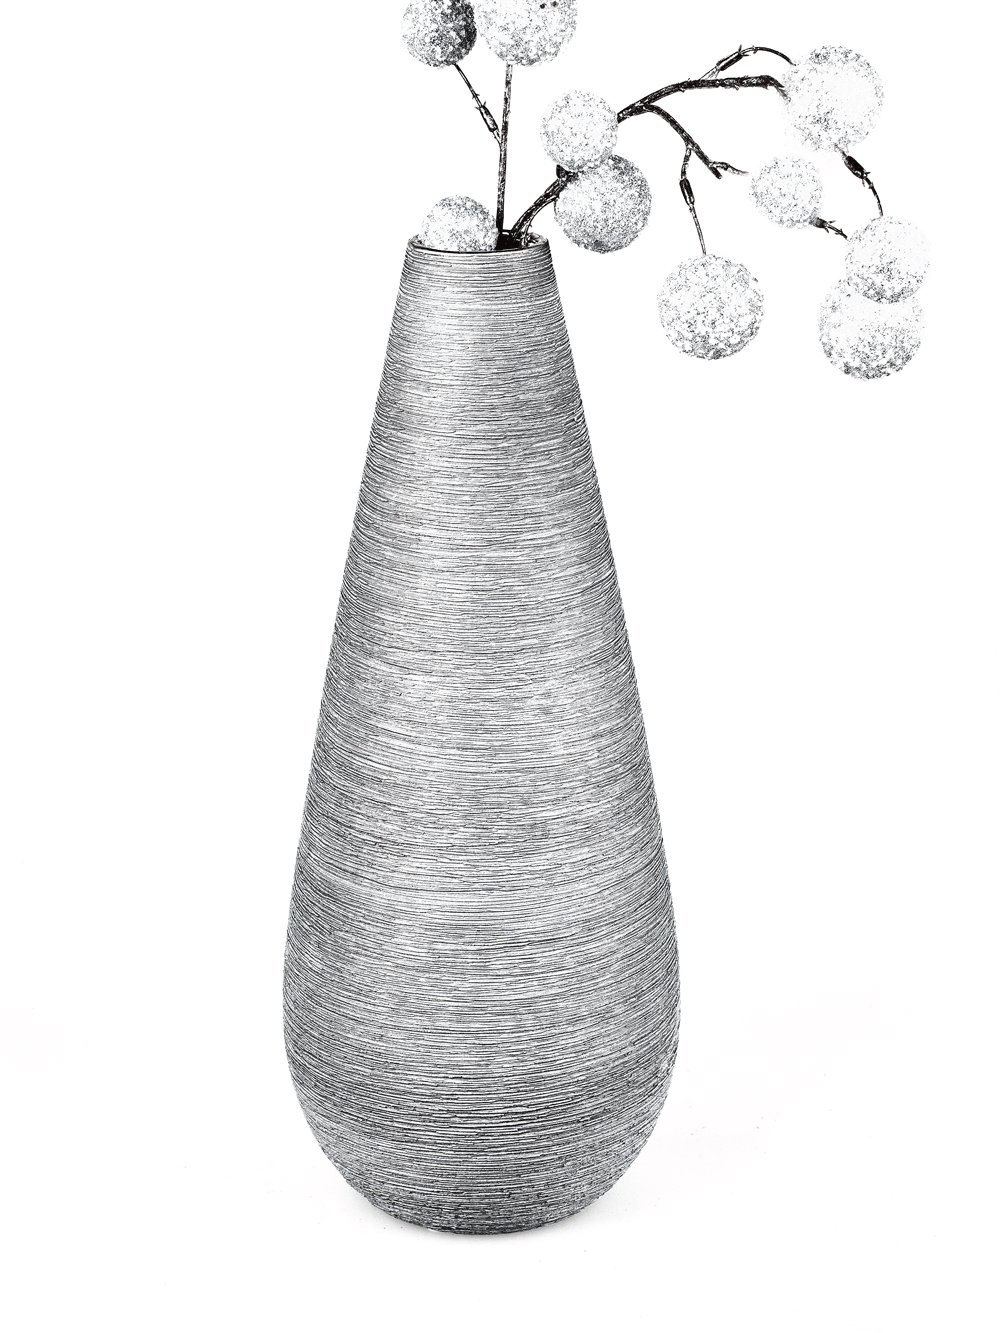 Formschöne Vase silber-grau 3 Größen